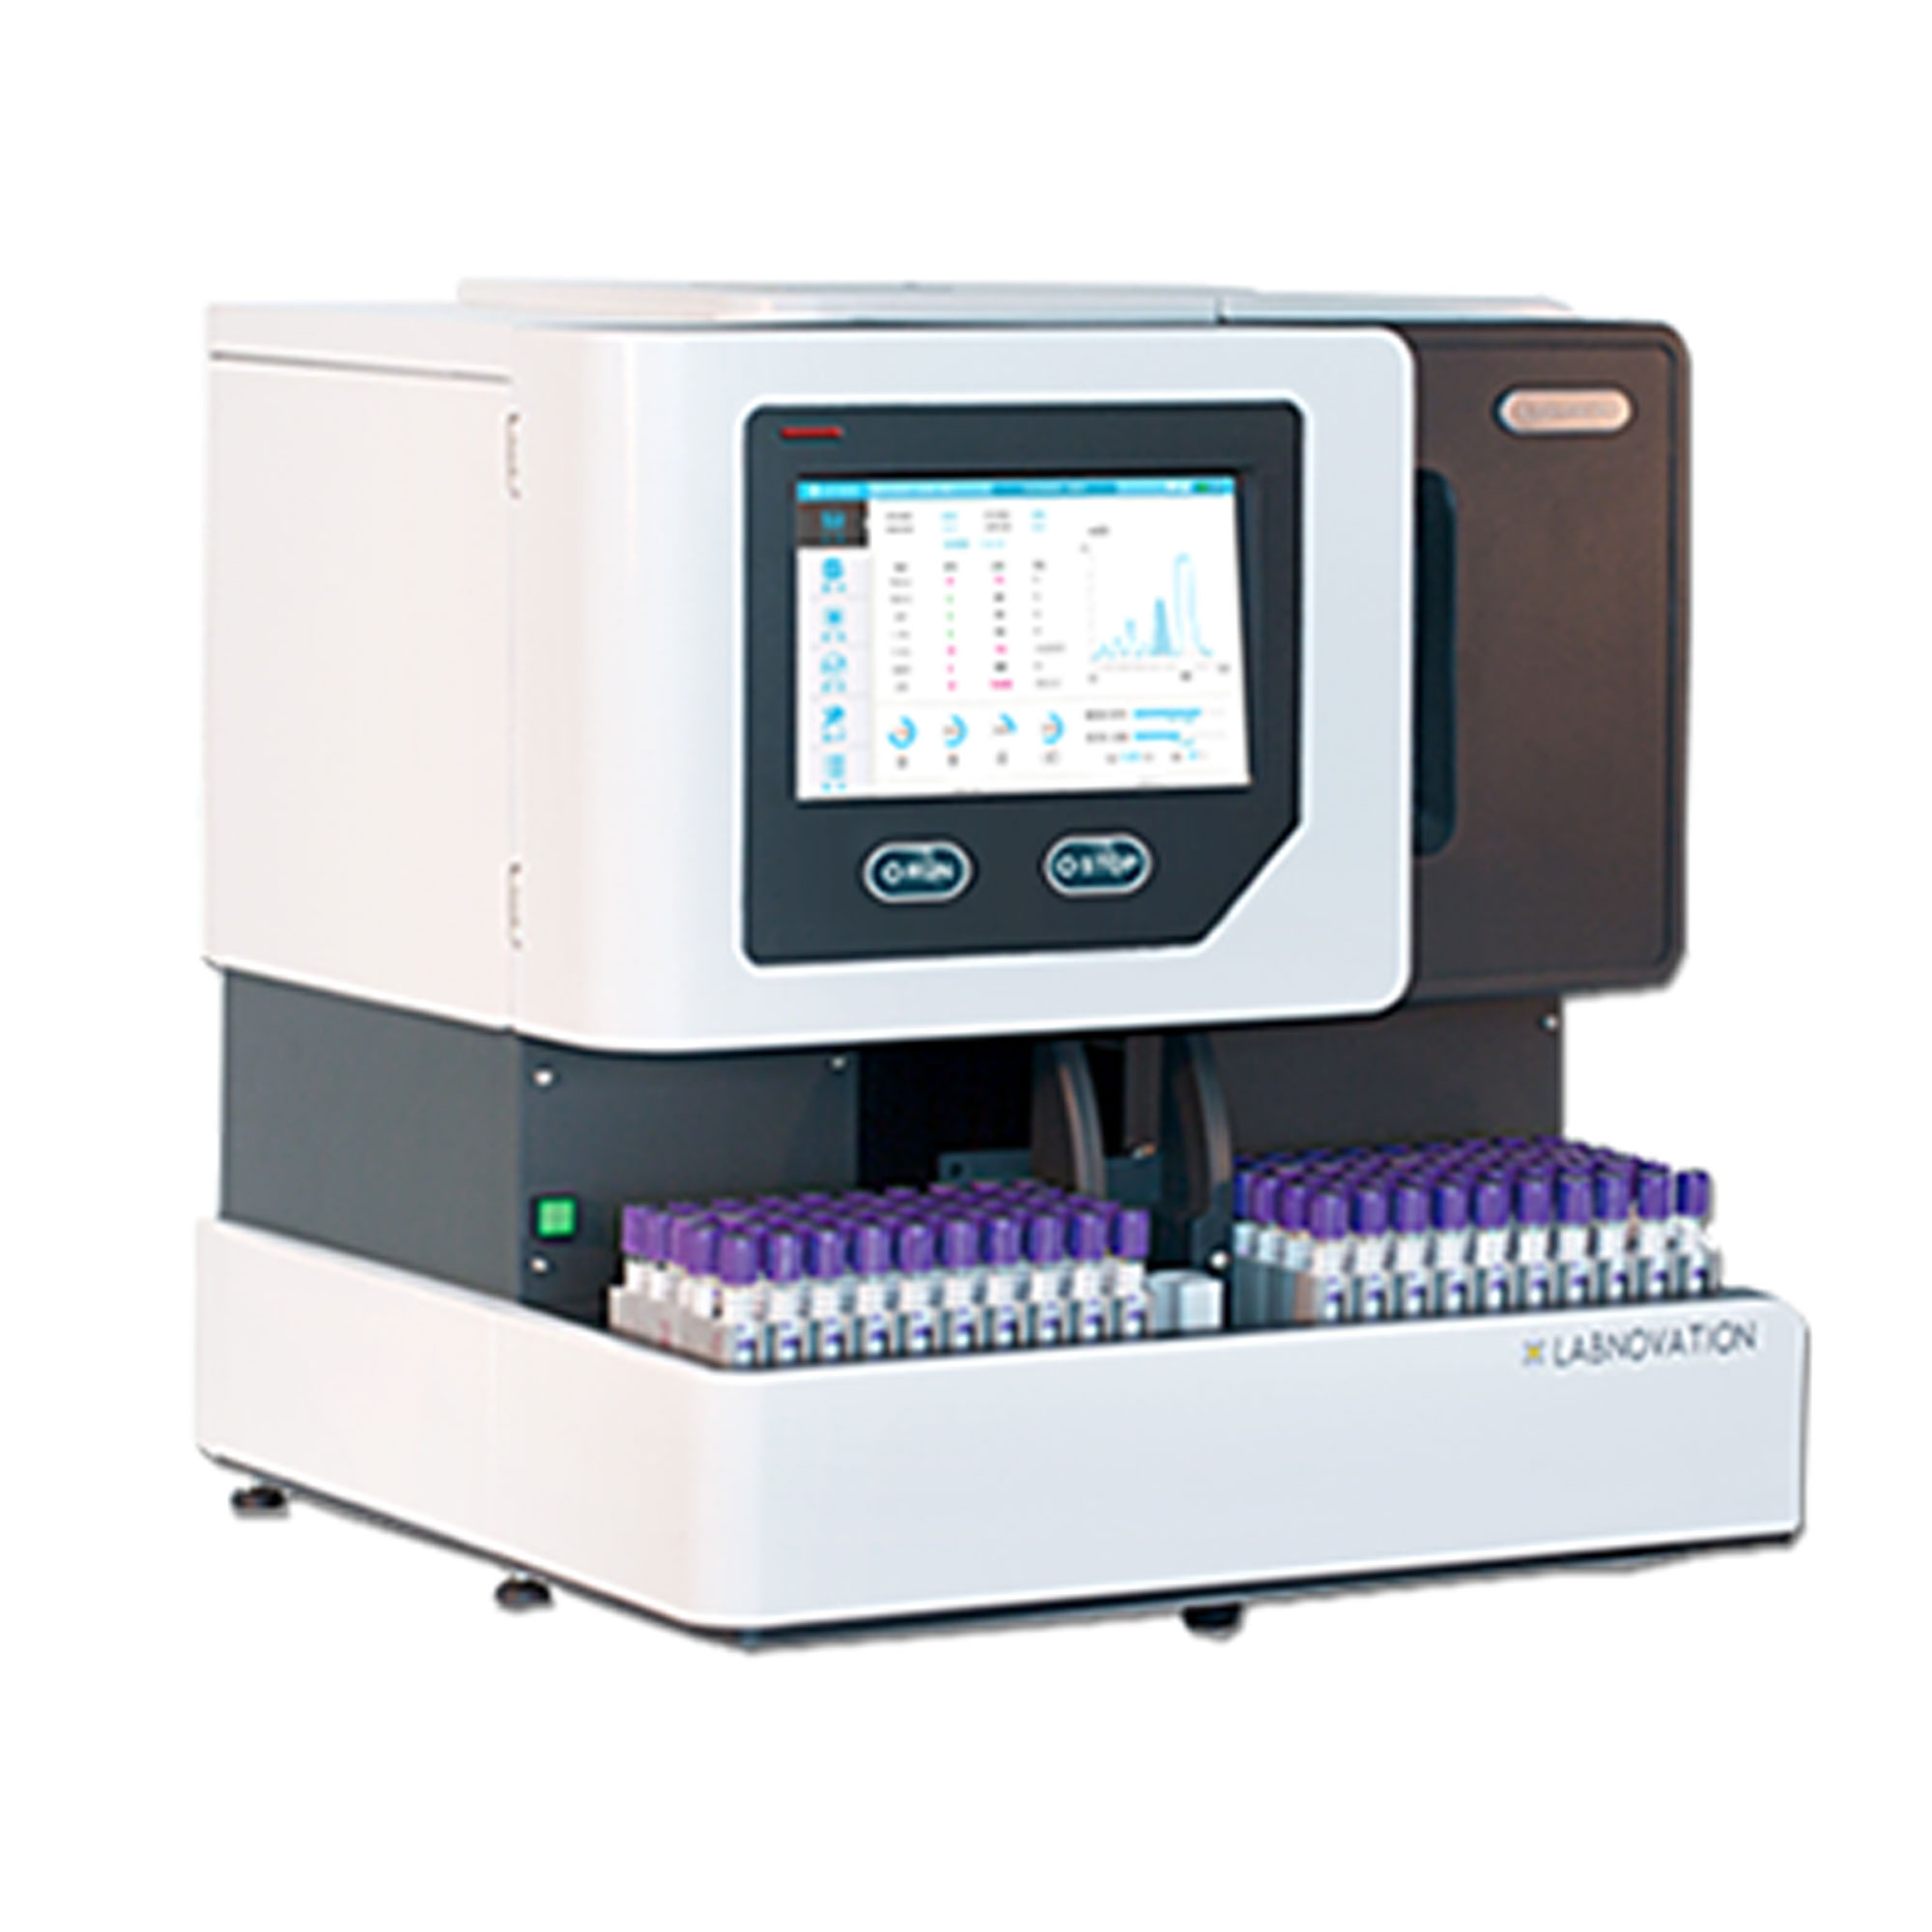 دستگاه ای وان سی - HbA1C-LD600 - lABNOVATION - دستگاه - هماتولوژی و بانک خون - گروه آزمایشگاهی پادینا ویستا